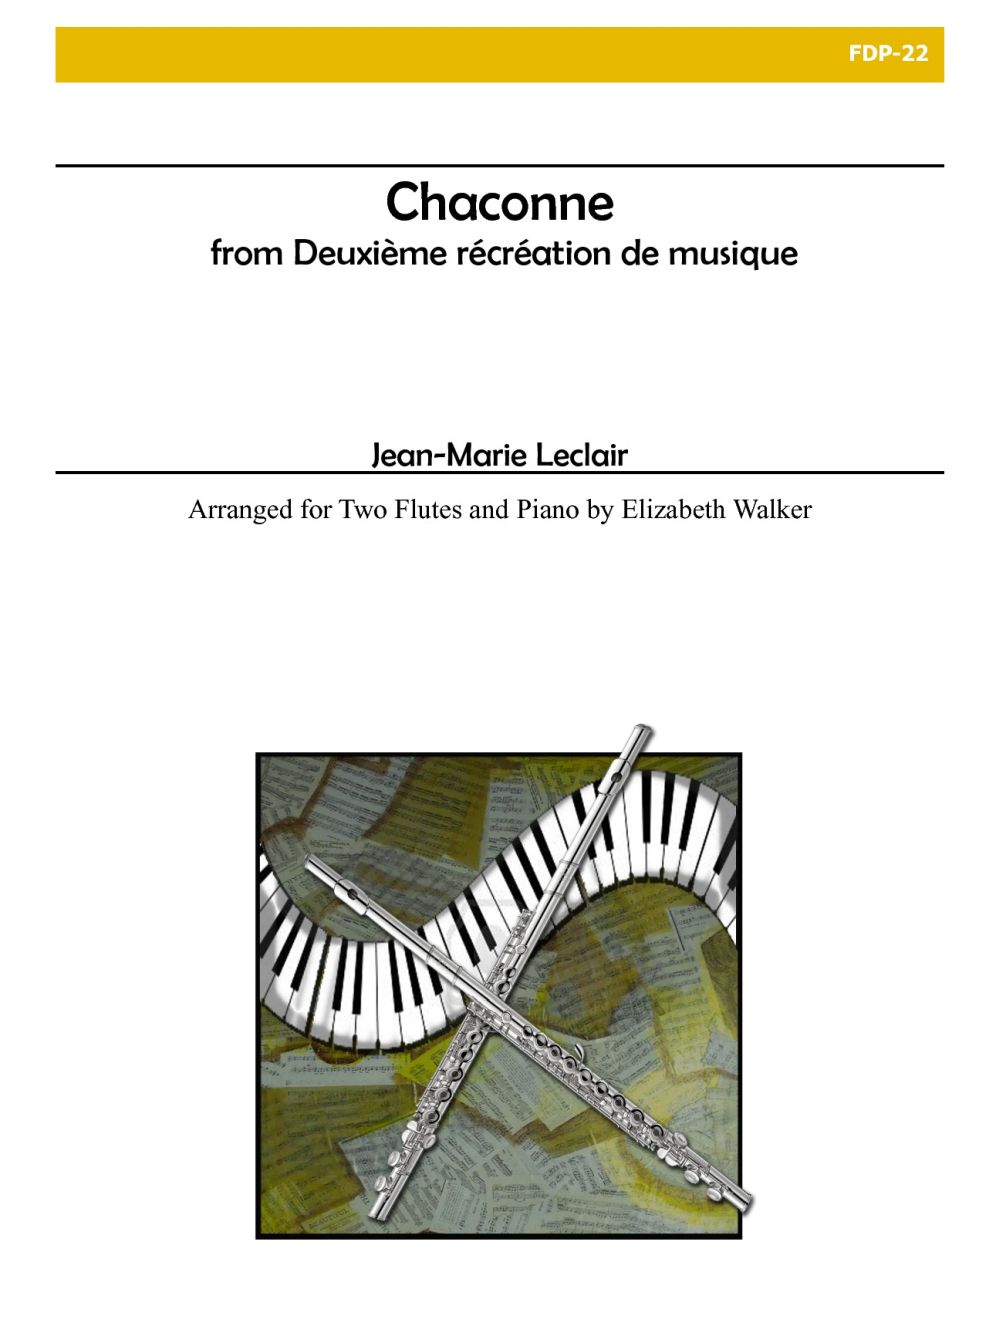 Chaconne From Deuxieme Recreation De Musique, Op. 8